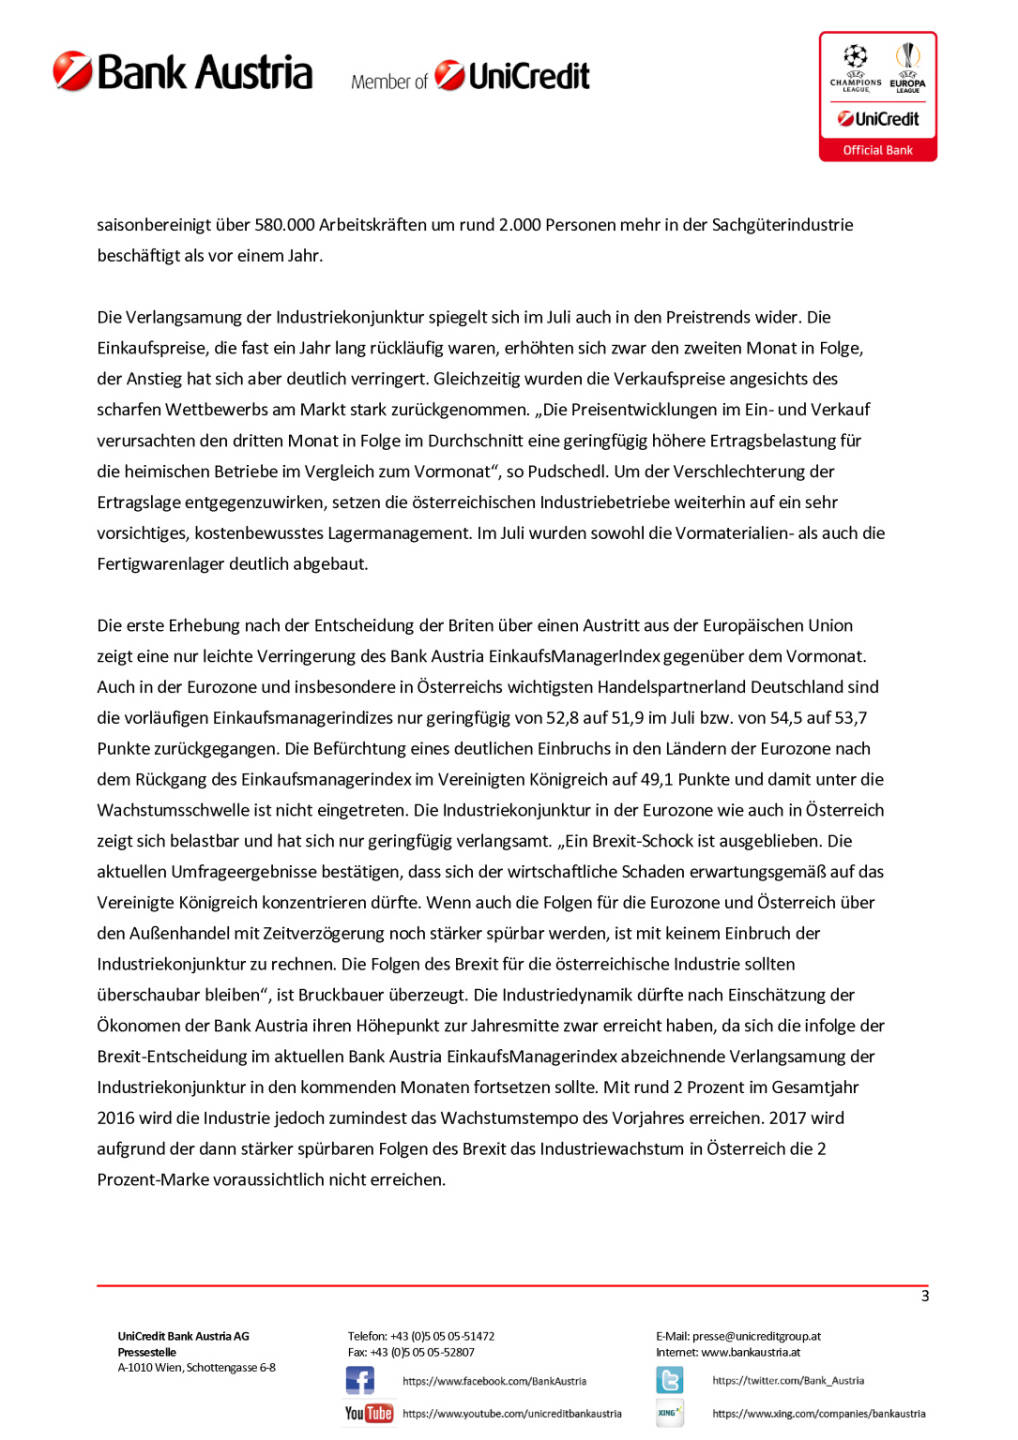 Bank Austria: Österreichs Industrie von Brexit-Entscheidung unbeeindruckt, Seite 3/4, komplettes Dokument unter http://boerse-social.com/static/uploads/file_1517_bank_austria_osterreichs_industrie_von_brexit-entscheidung_unbeeindruckt.pdf